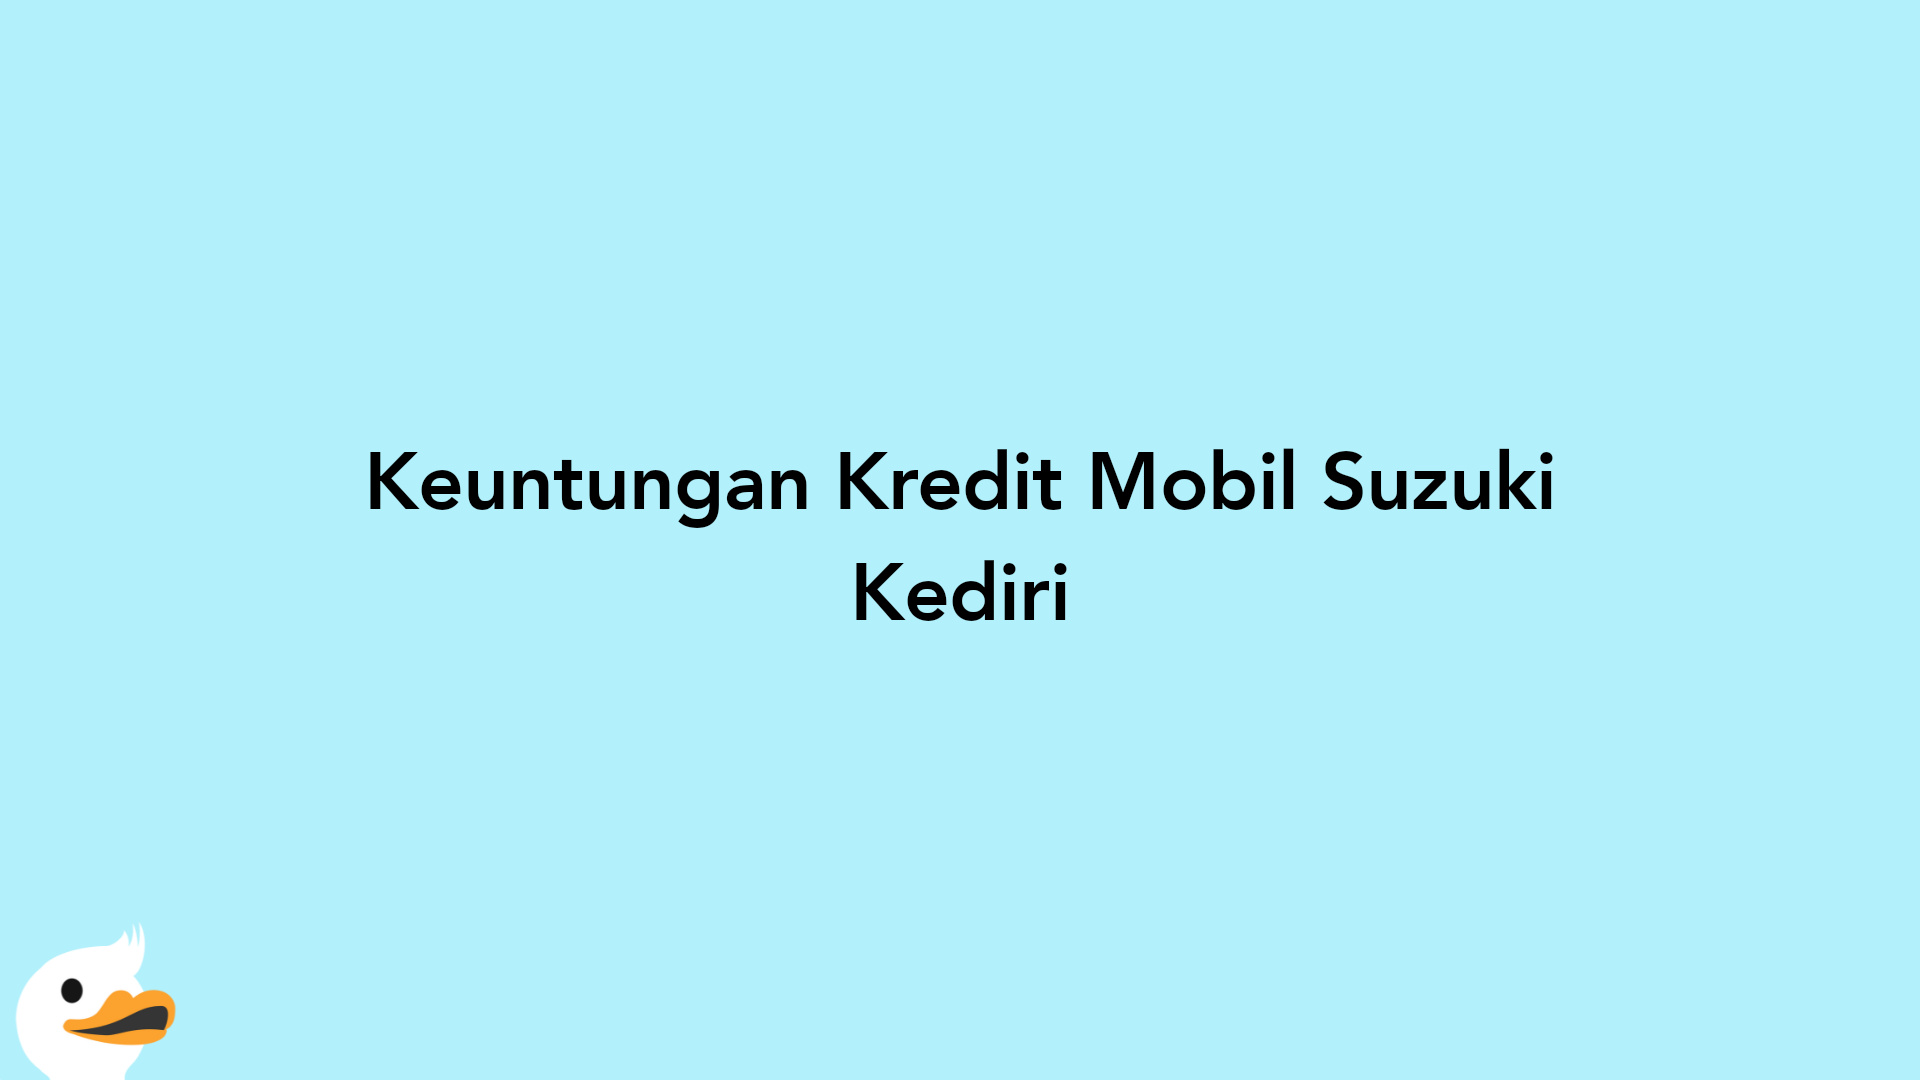 Keuntungan Kredit Mobil Suzuki Kediri